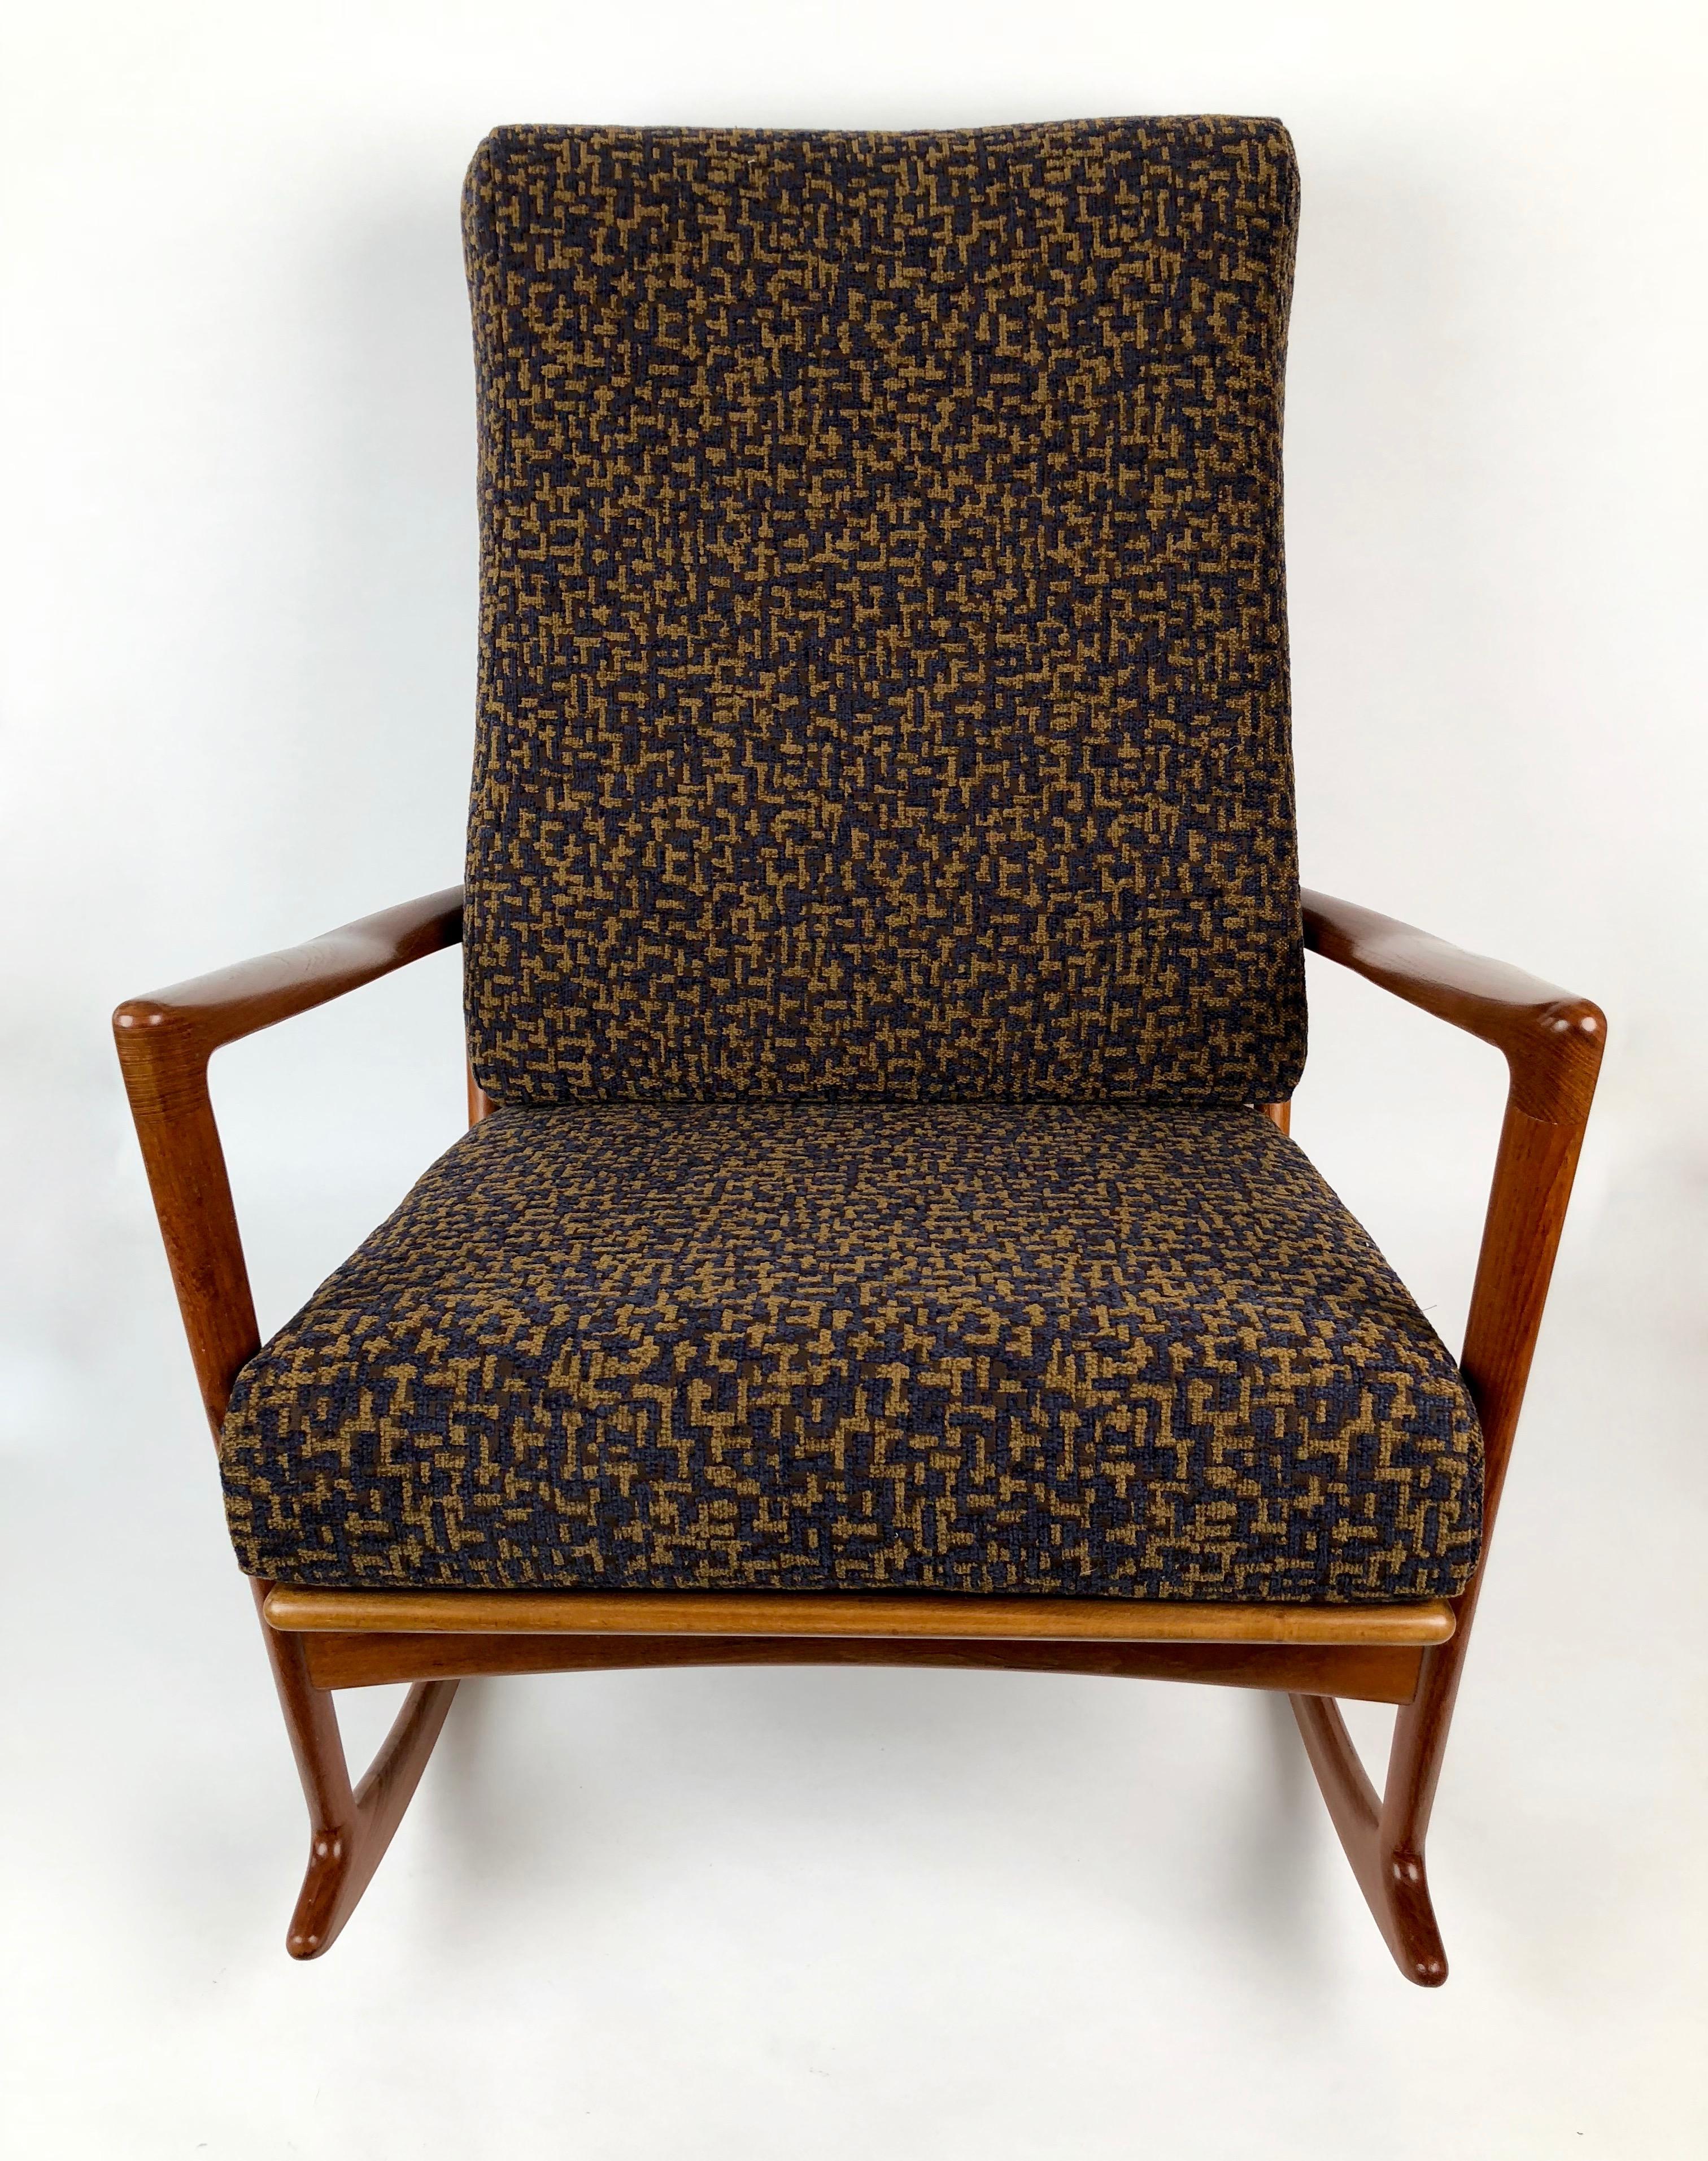 Chaise à bascule d'Ib Kofod-Larsen, modèle 650-15 avec cadre en teck massif et coussins d'assise et de dossier perdus.
Conçu en 1962 et produit par Chr. Linnebergs Mobelfabric.
Les coussins ont été retapissés dans un tissu Rubelli. Le bois de teck